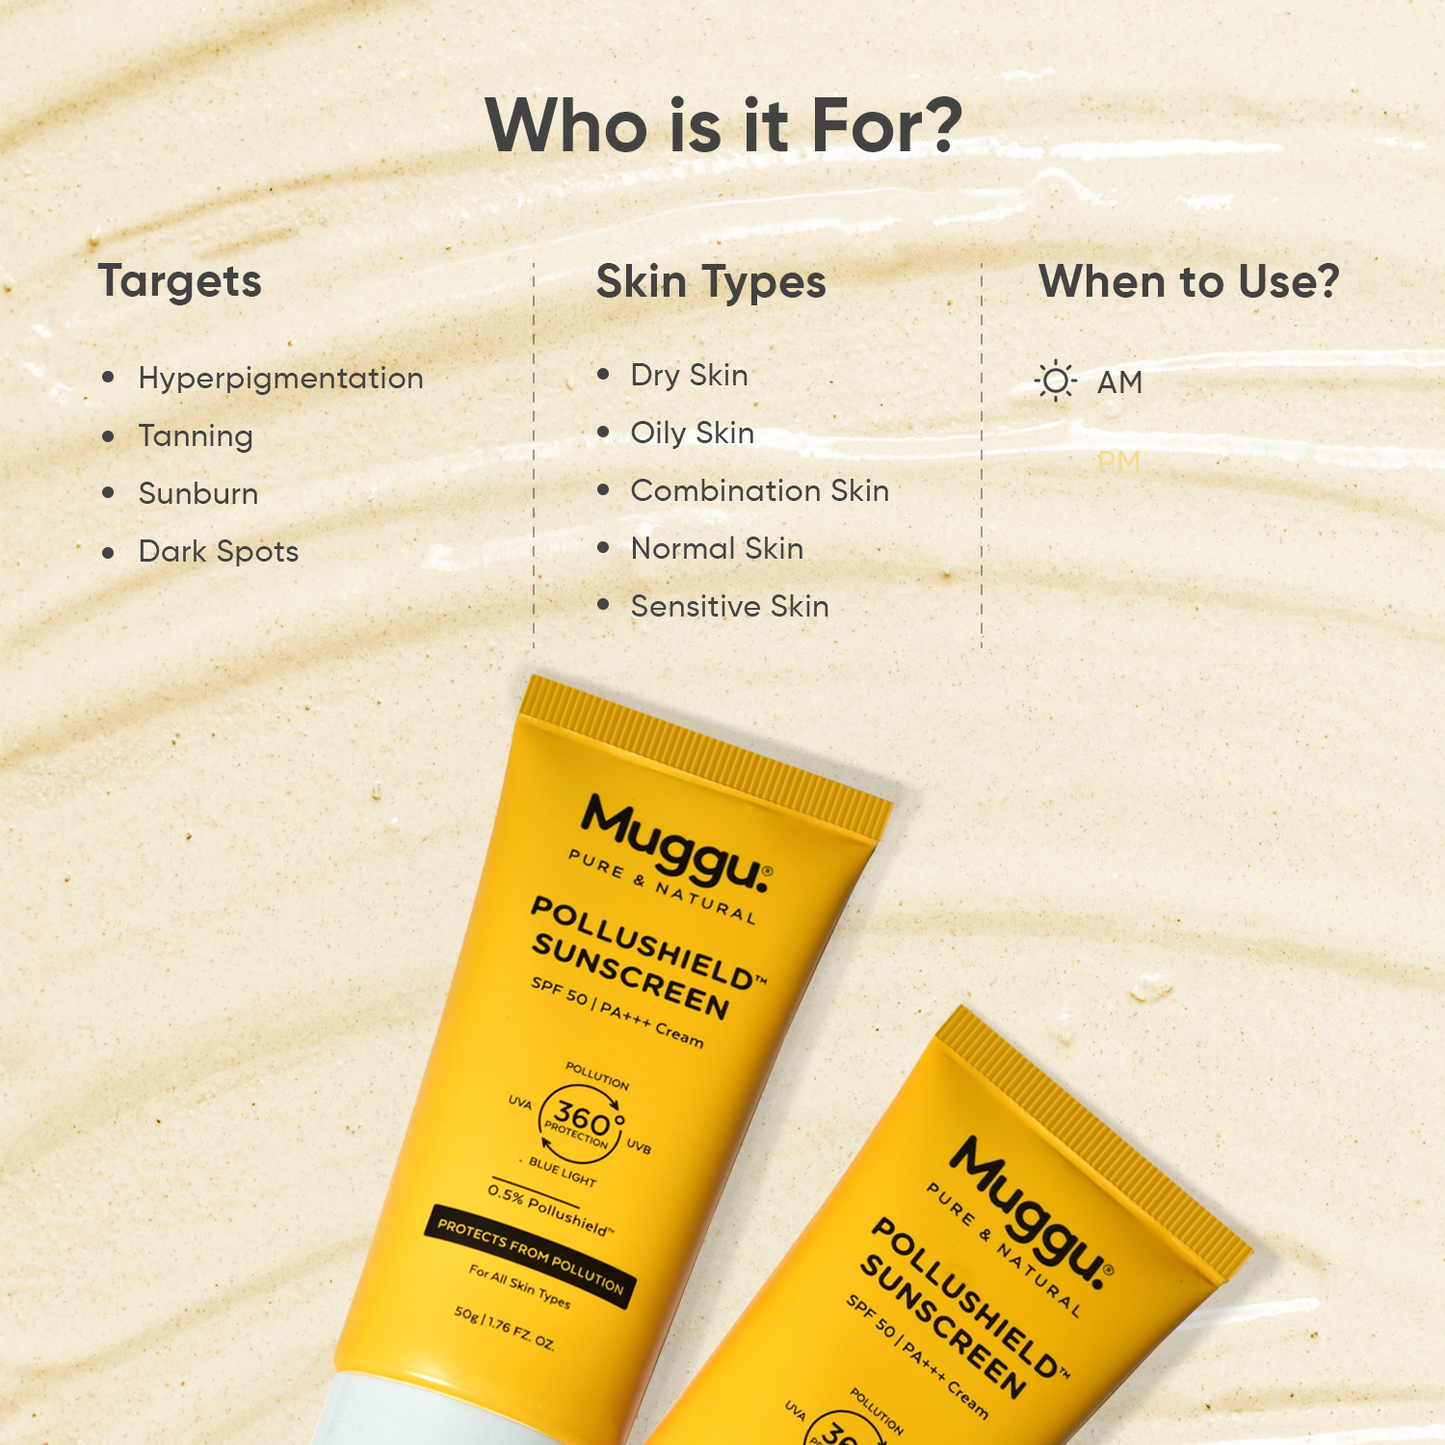 Pollushield-Sunscreen-spf-50-sunscreen-for-face